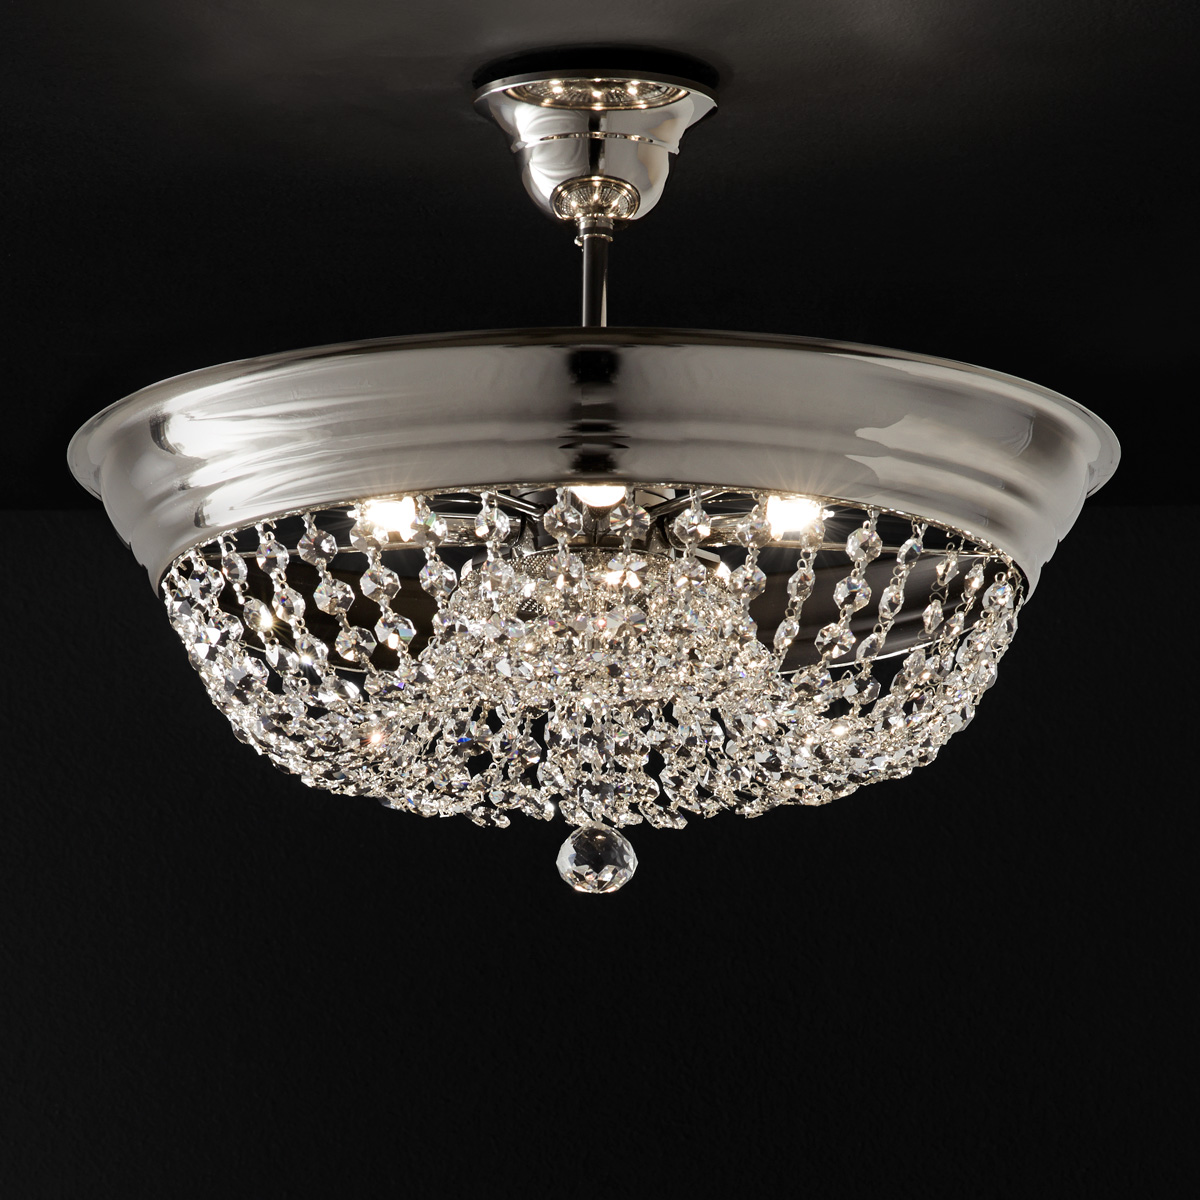 Φωτιστικό οροφής με κρύσταλλα ΑΡΤΕΜΙΣ ceiling lamp with crystal accents